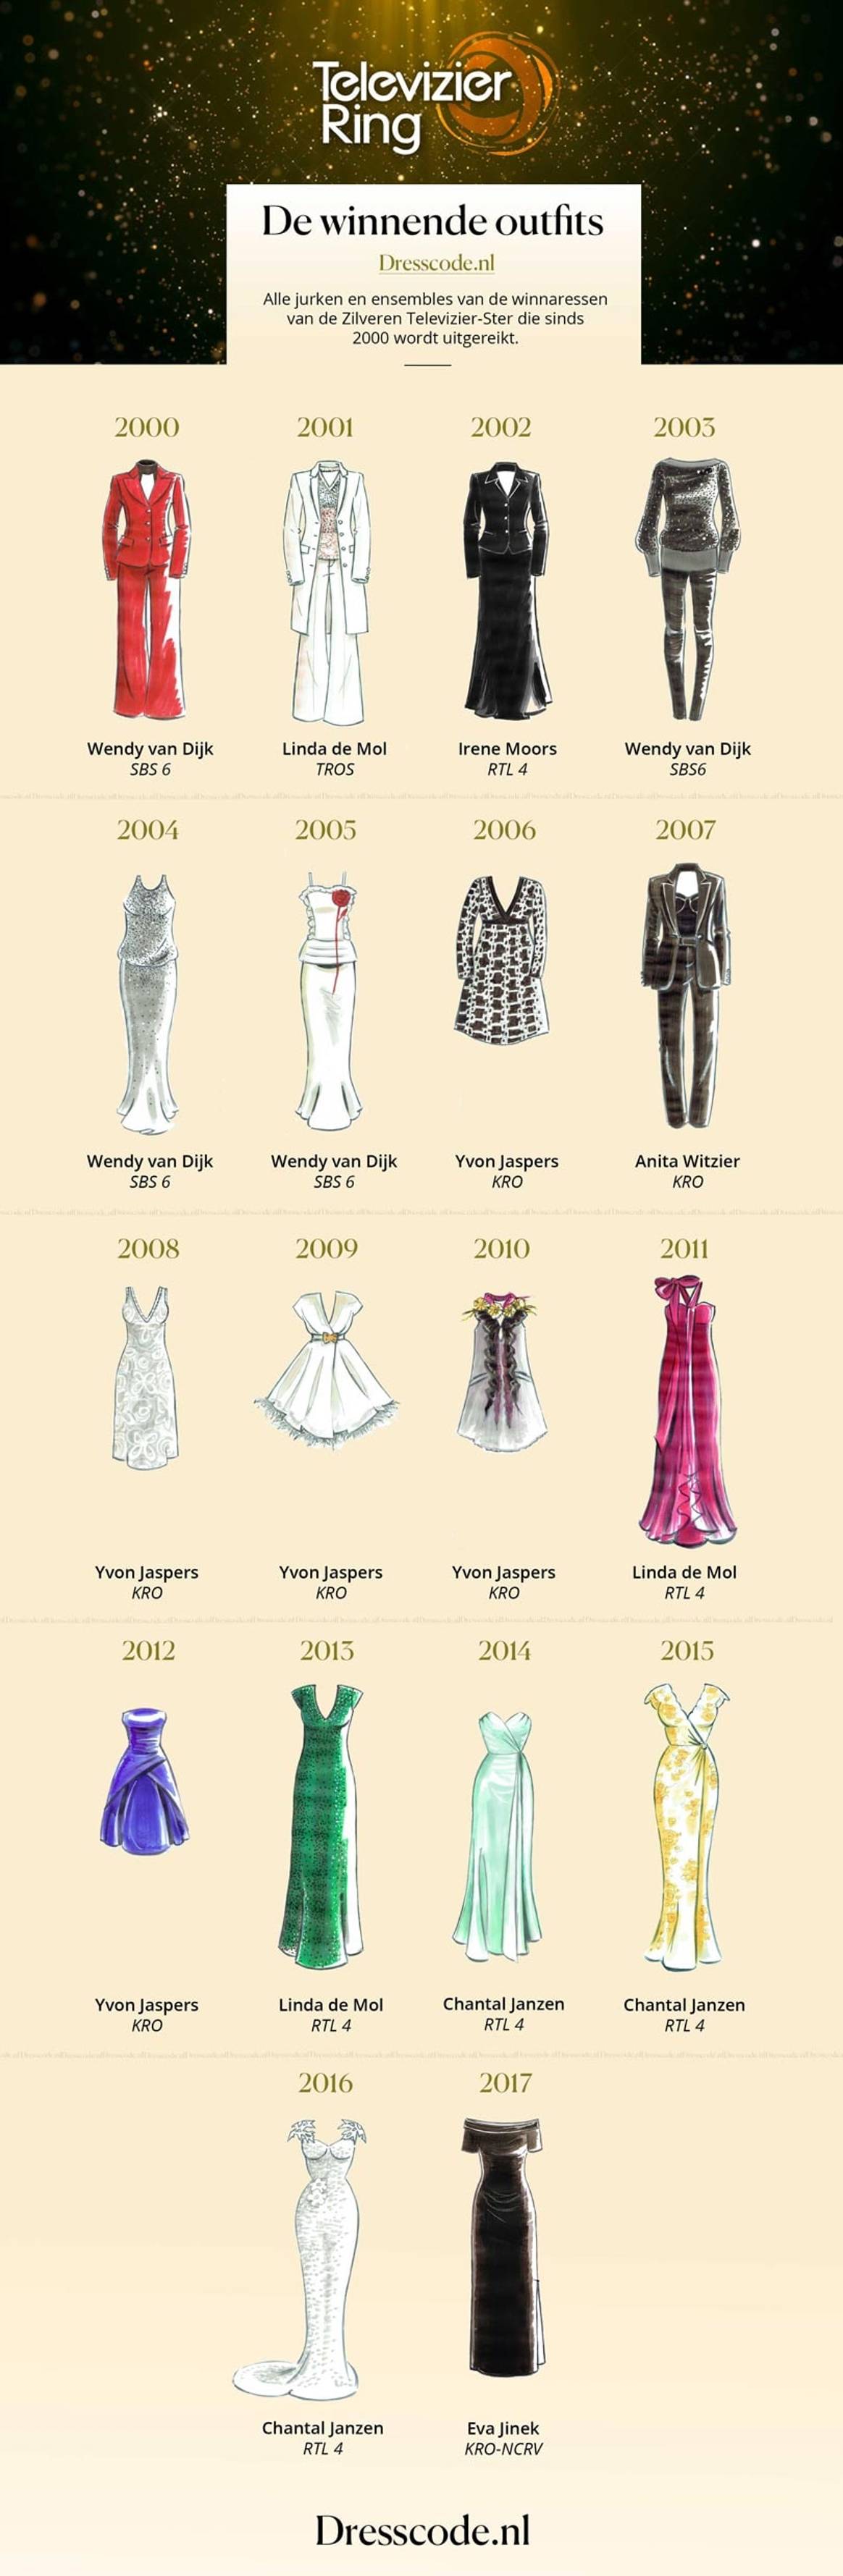 In beeld: alle jurken van de winnaressen van de Zilveren Televizier-Ster